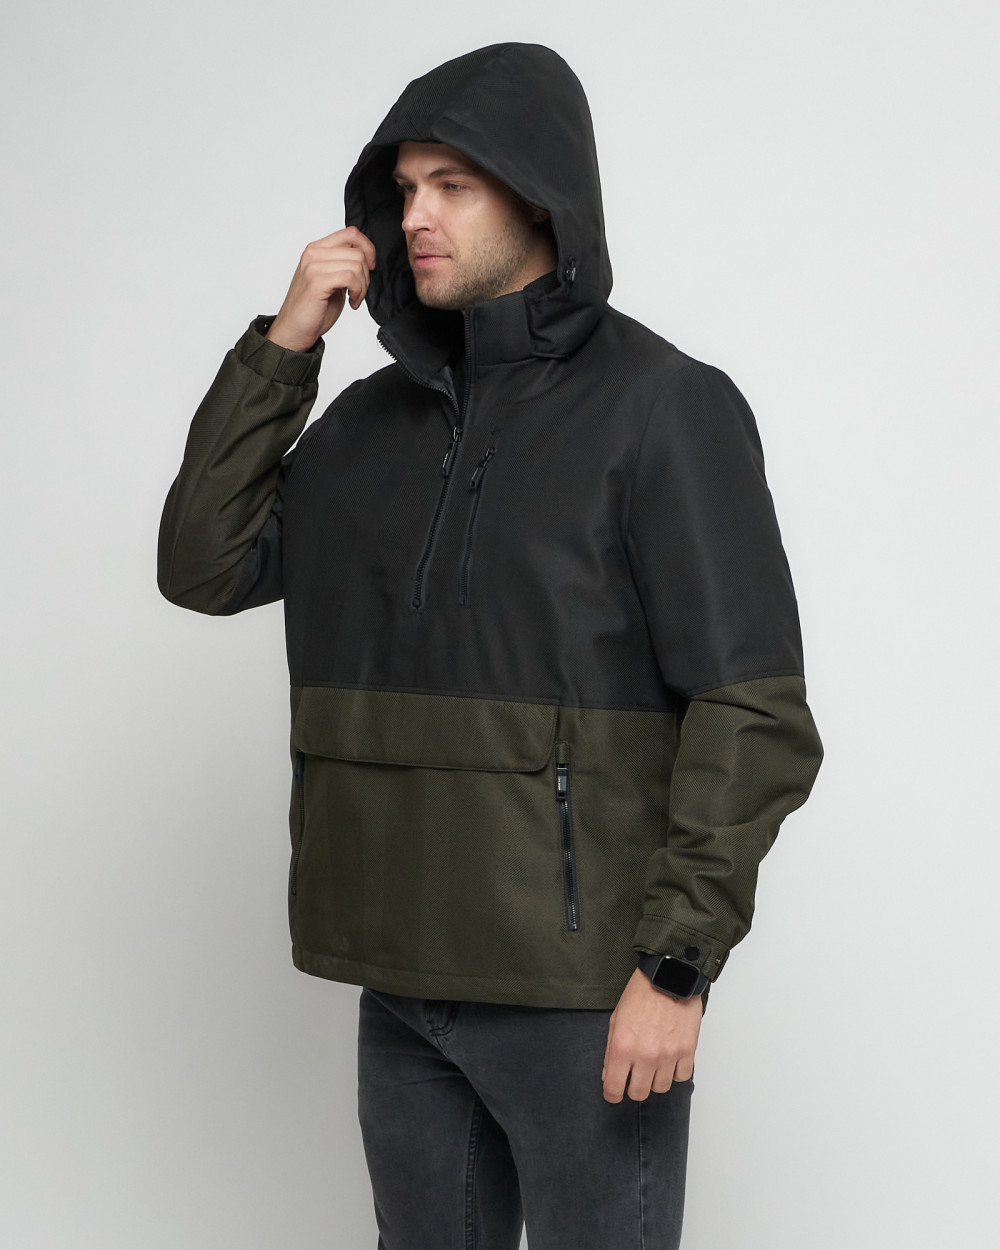 Купить куртку анорак спортивную мужскую оптом от производителя недорого в Москве 3307Ch 1